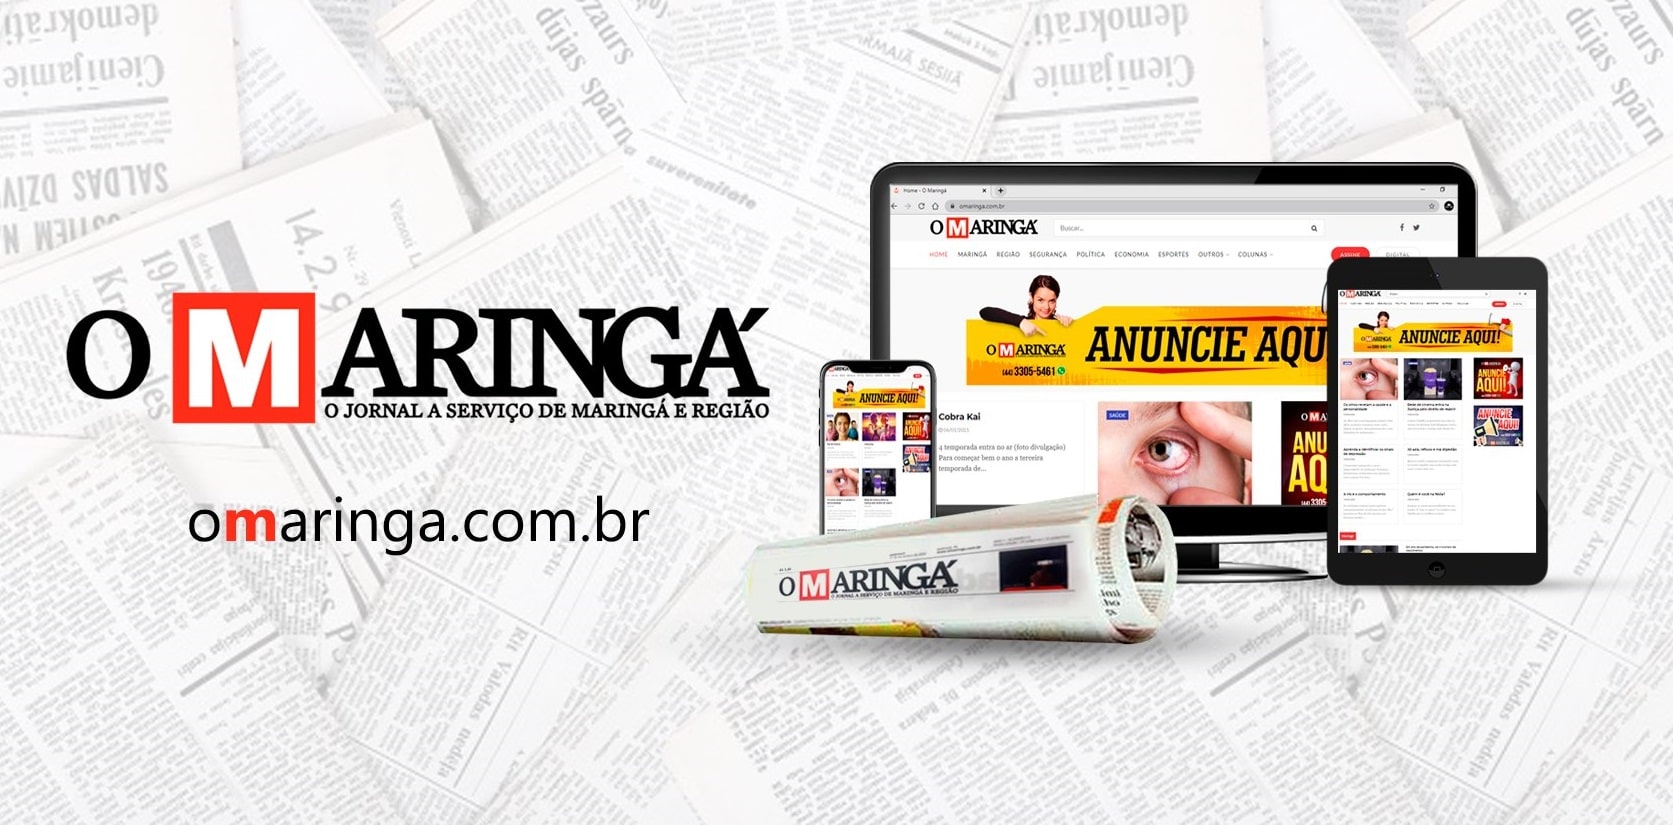 O Maringá | O Jornal com Notícias de Maringá e Região